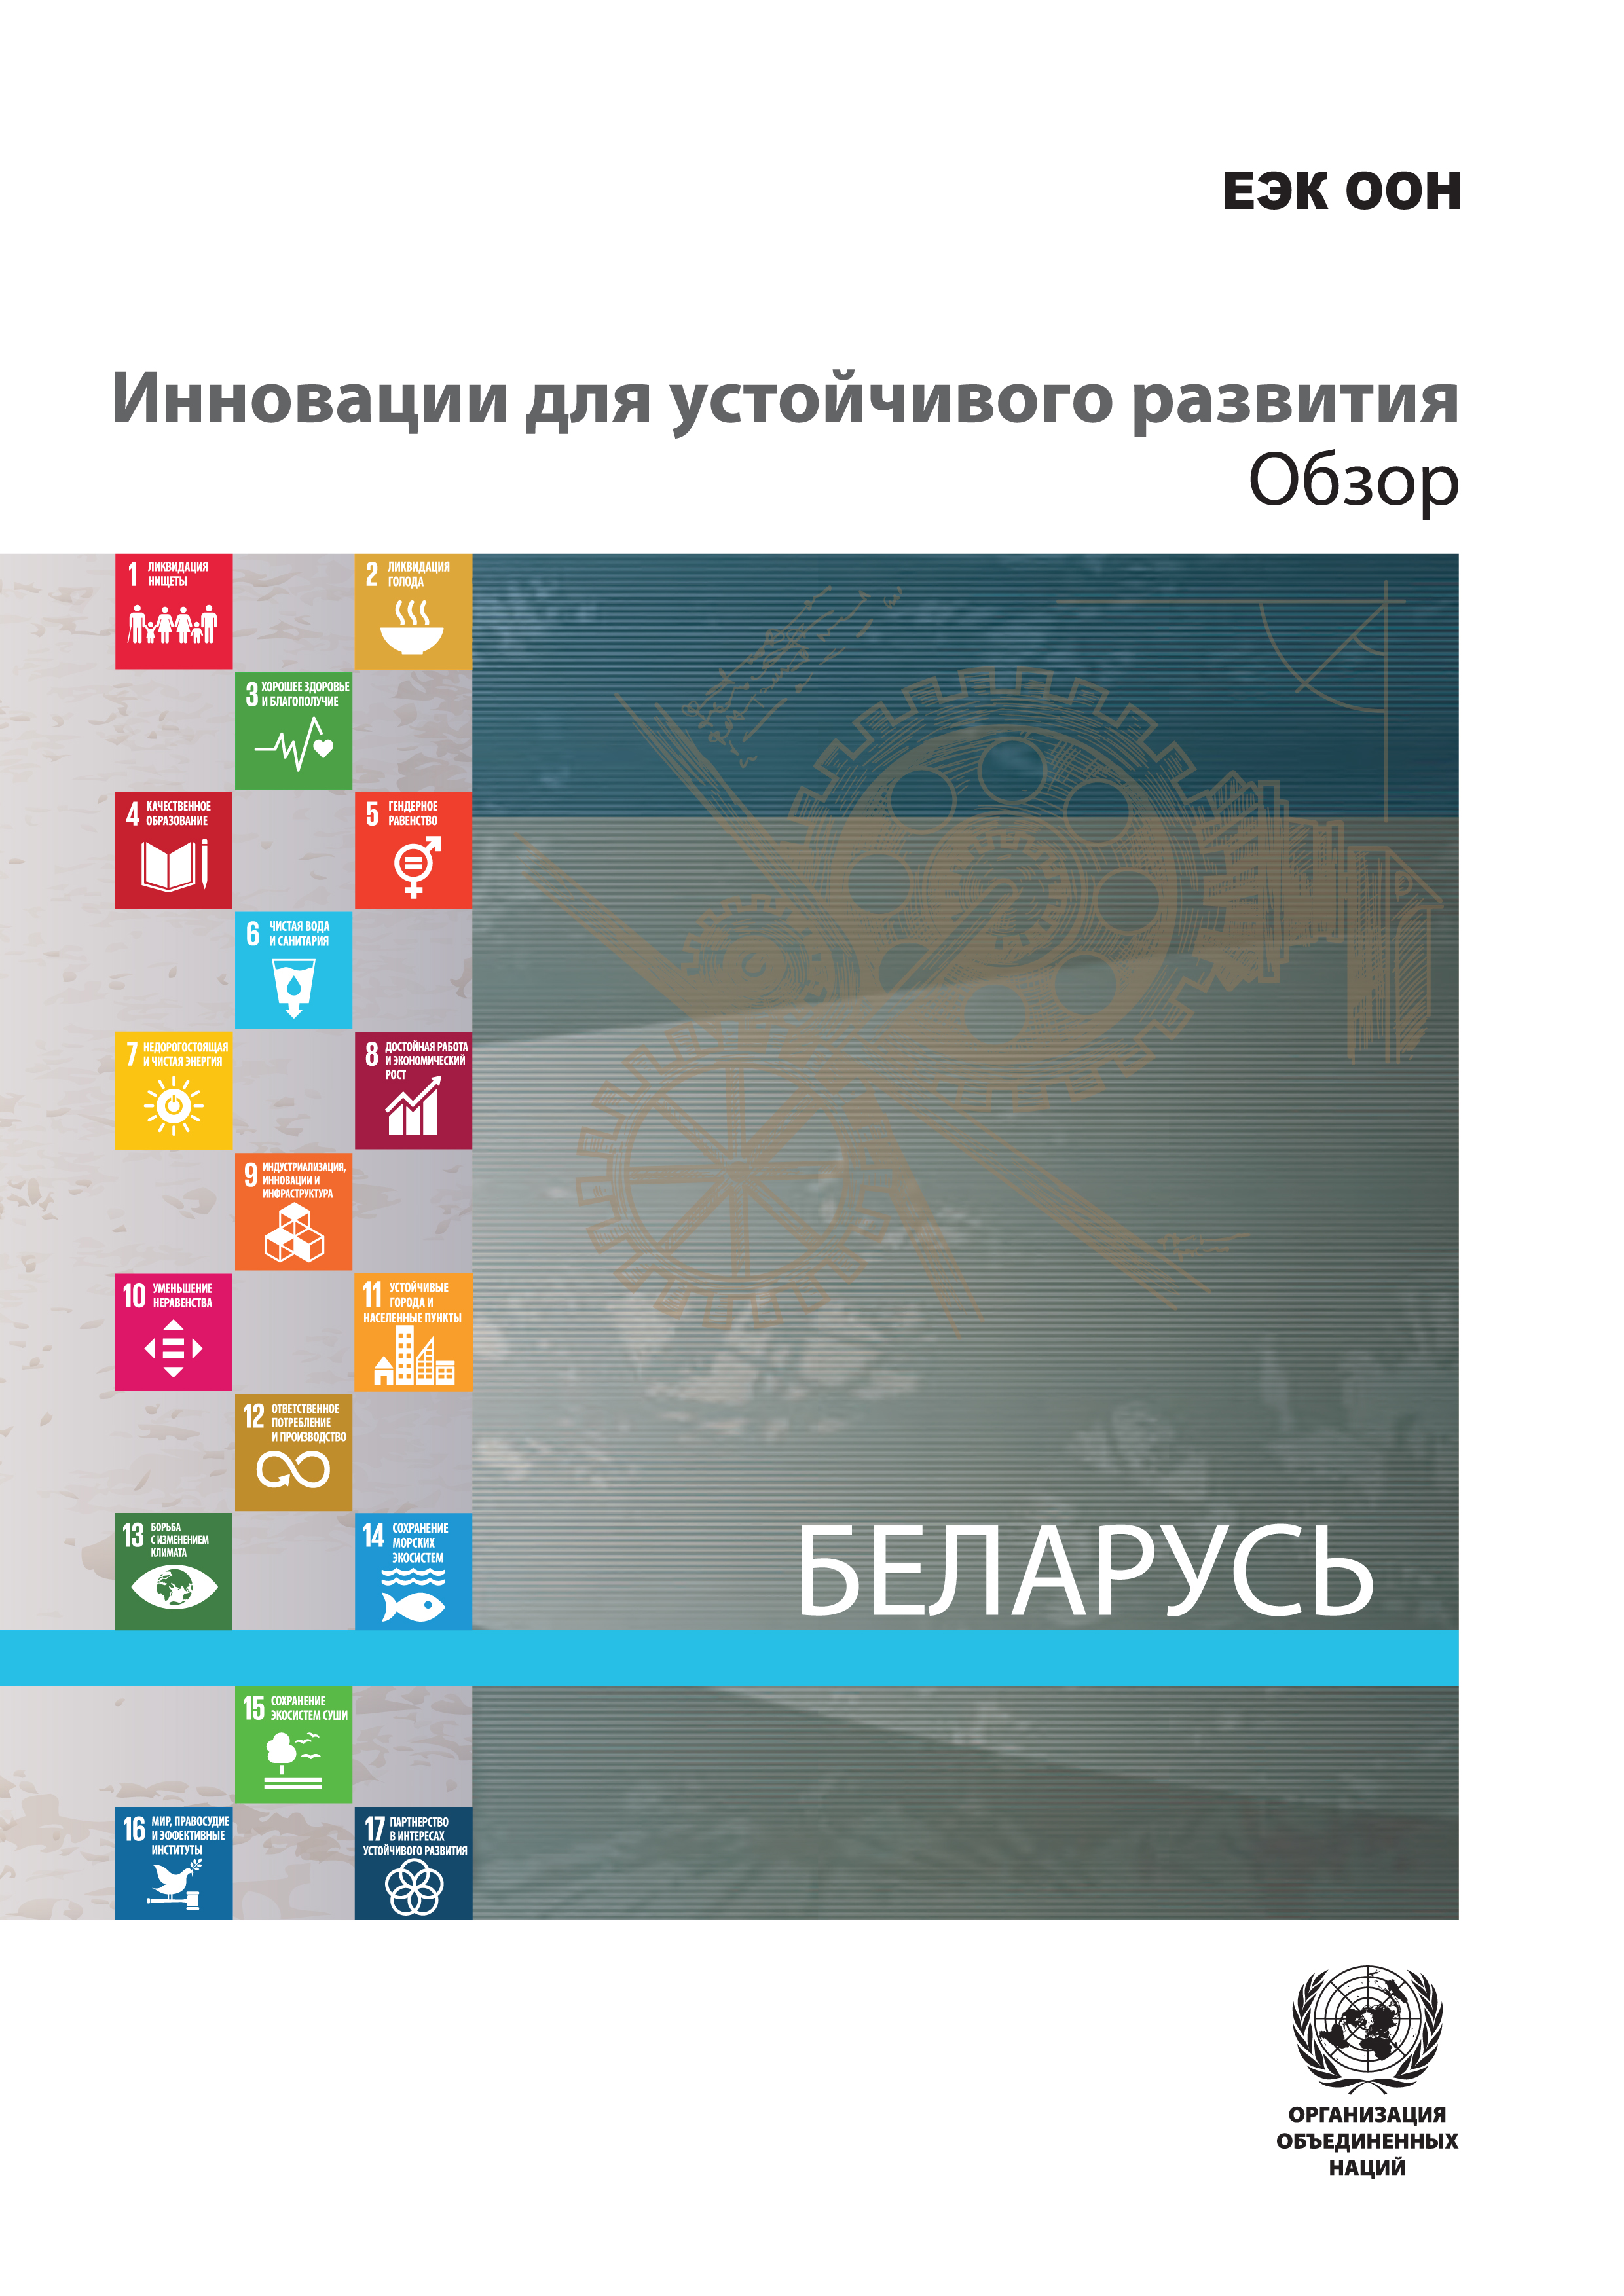 image of Инновационная политика для устойчивого развития